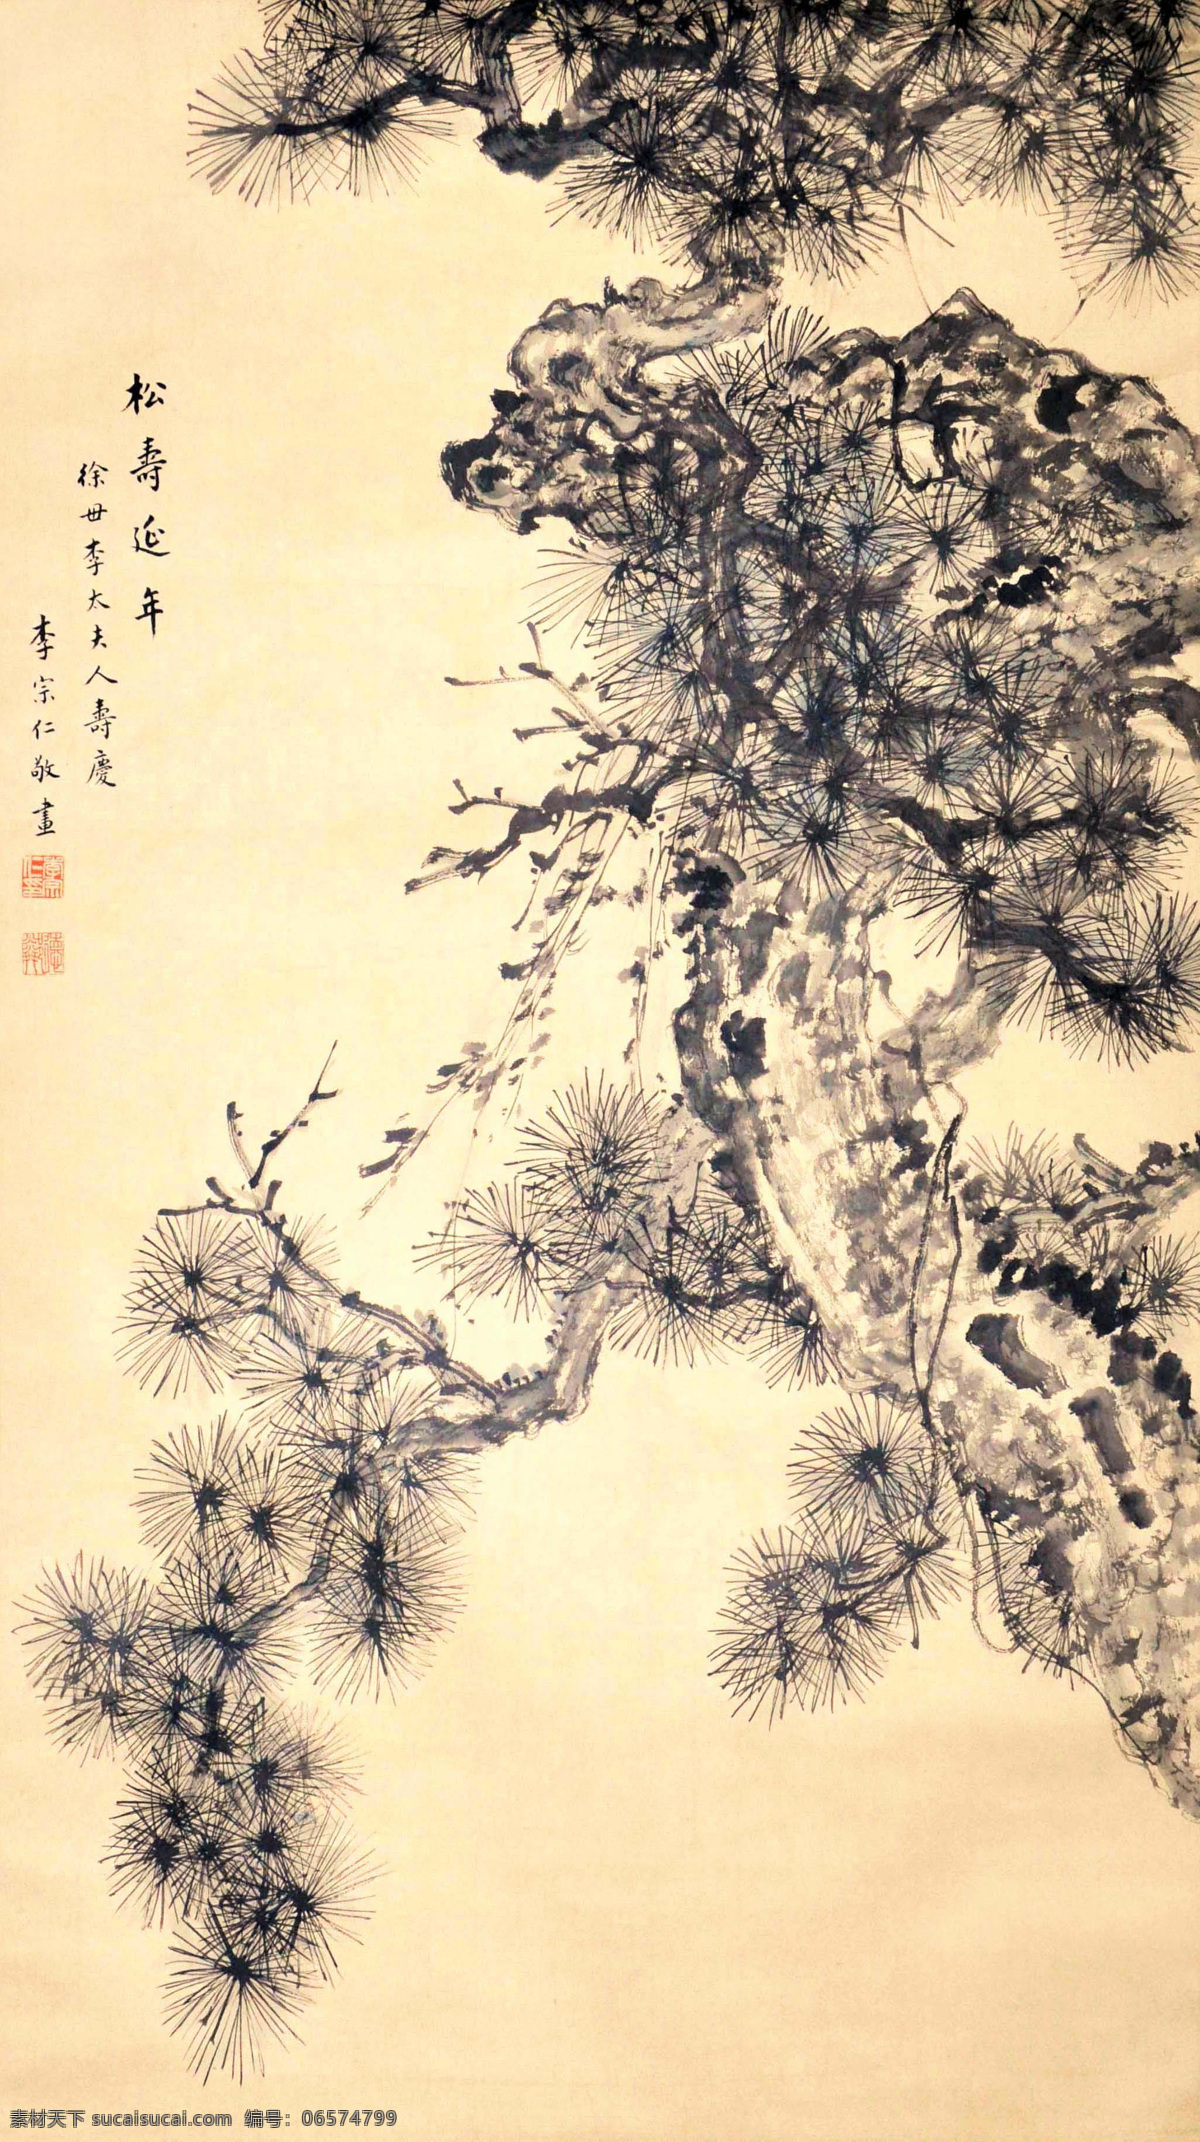 李宗仁 松树 写意 水墨画 国画 中国画 传统画 名家 绘画 艺术 文化艺术 绘画书法